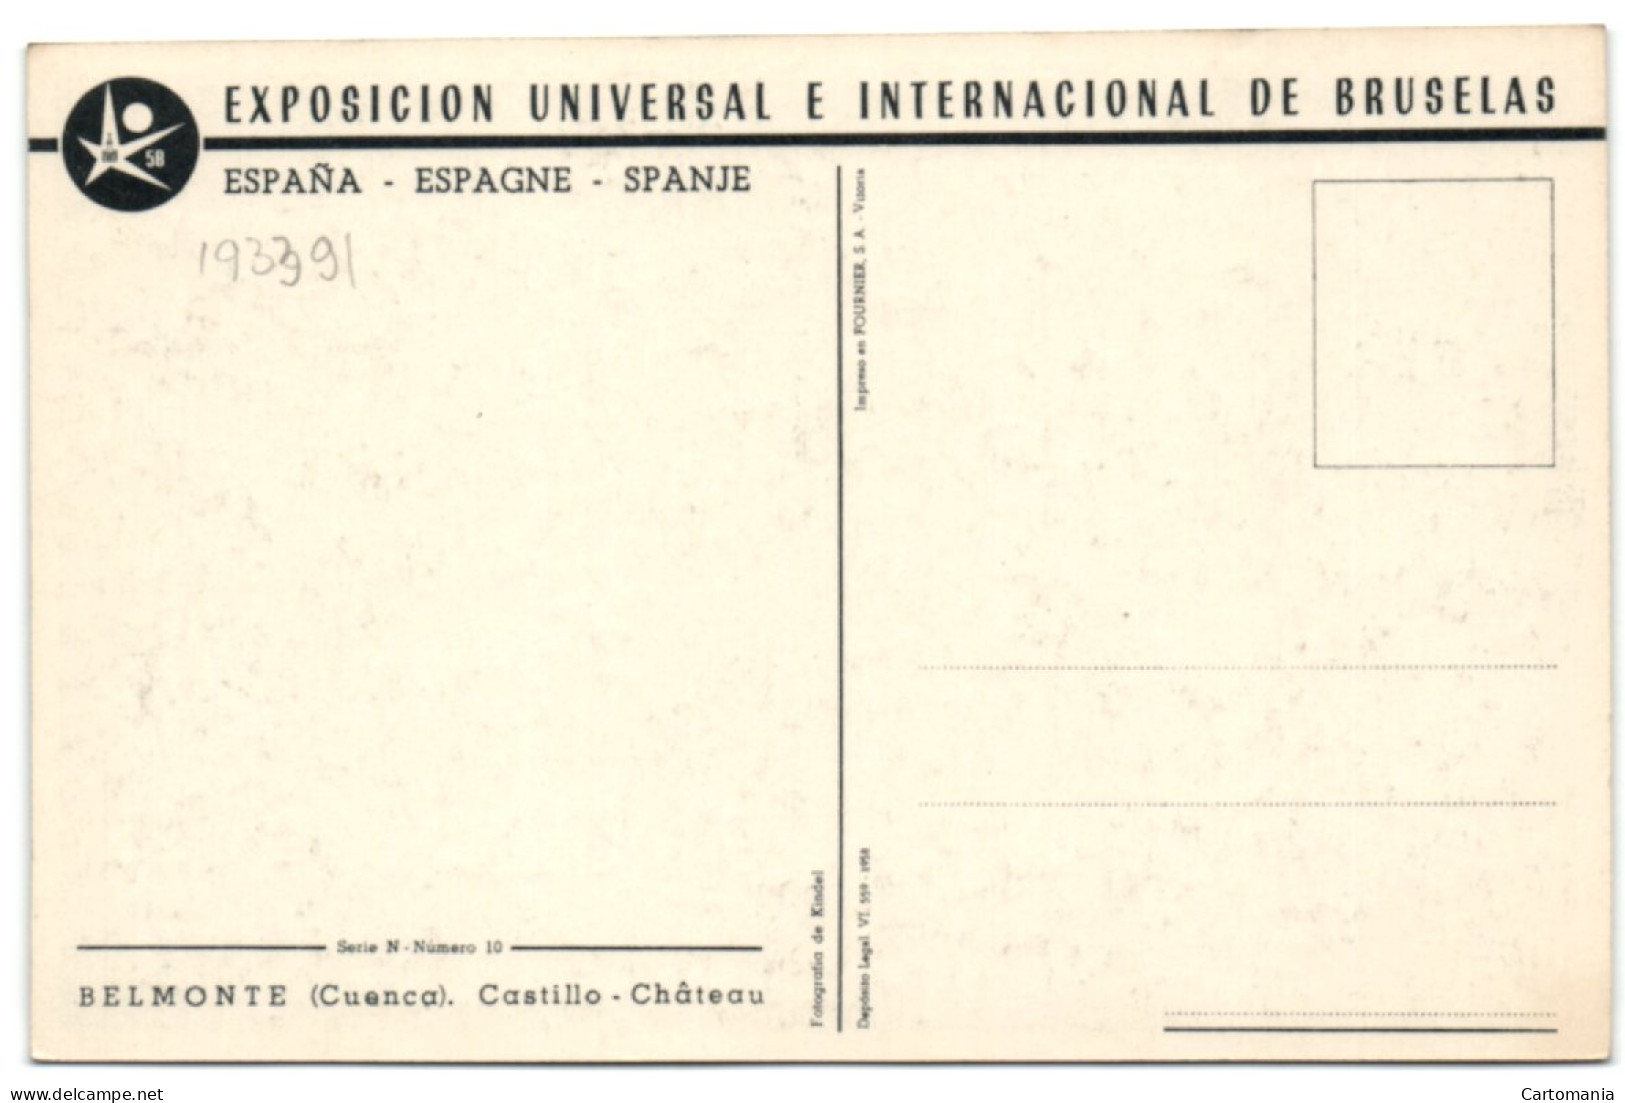 Exposicion Universal E Internacional De Bruselas 1958 - Belmonte (Cuenca) - Castillo - Cuenca